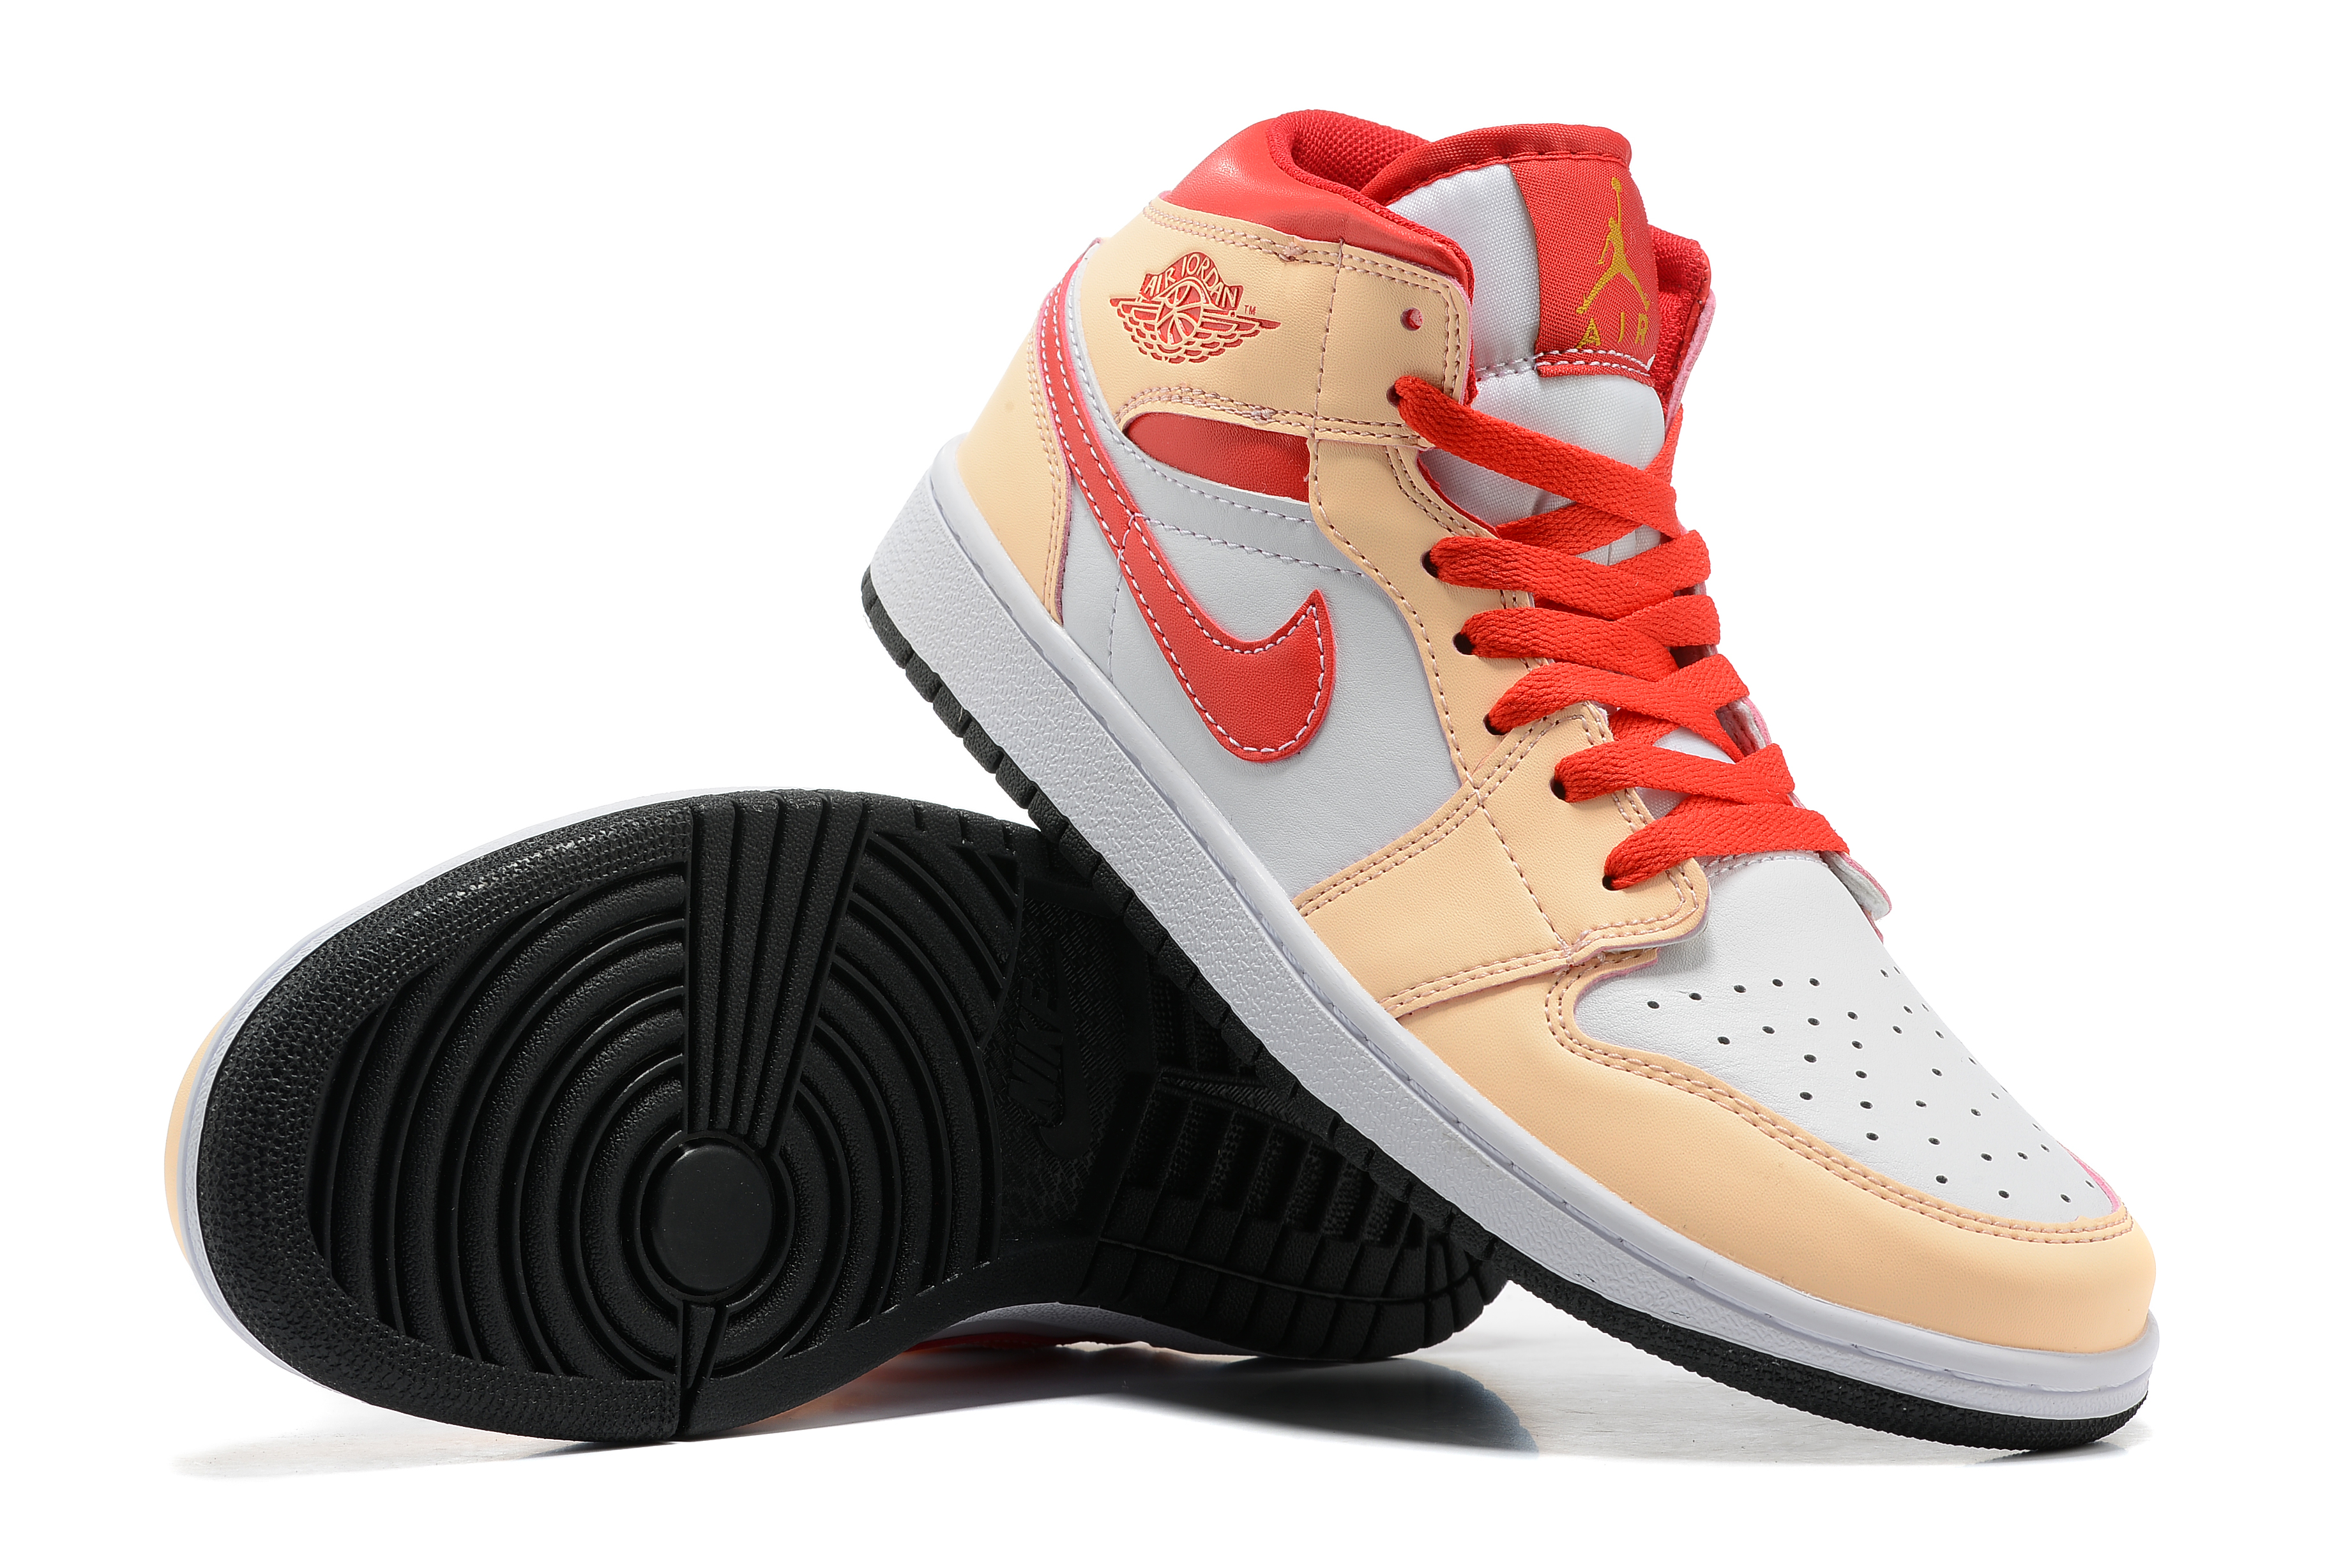 New 2022 Air Jordan 1 Retro Pink Peach White Shoes